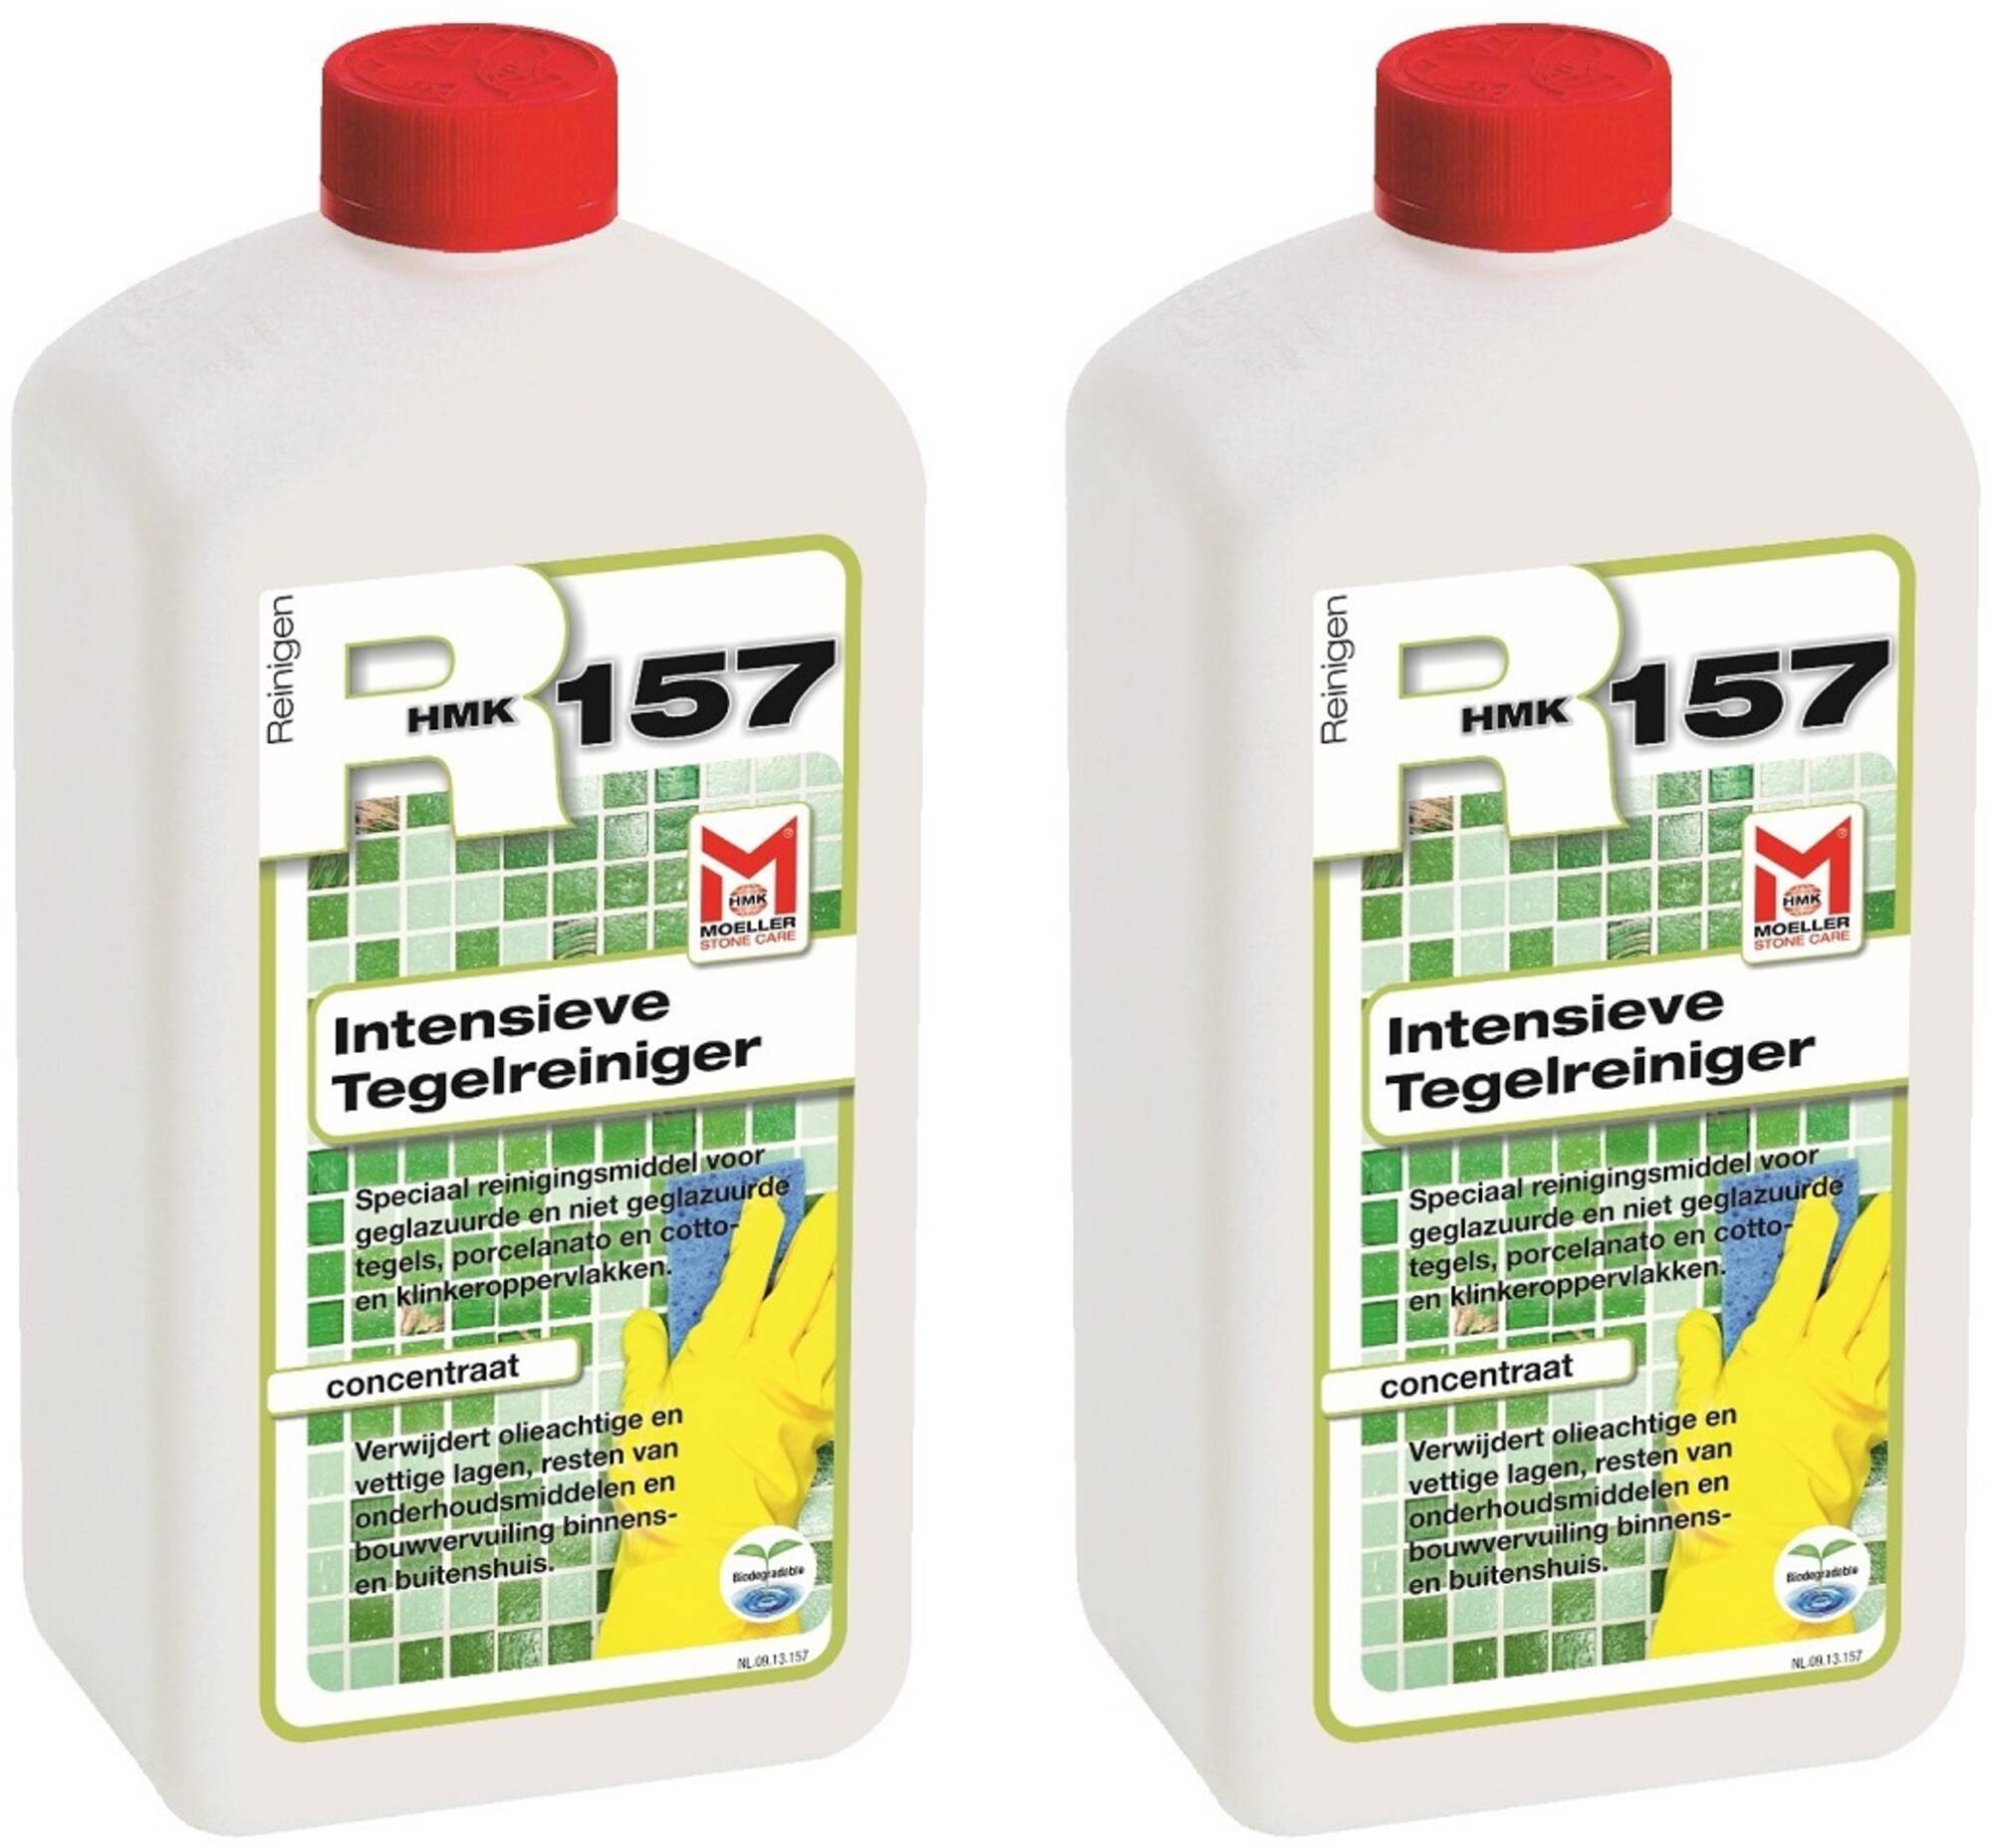 Moeller HMK R157 intensieve tegelreiniger Voordeelverpakking 2 stuks